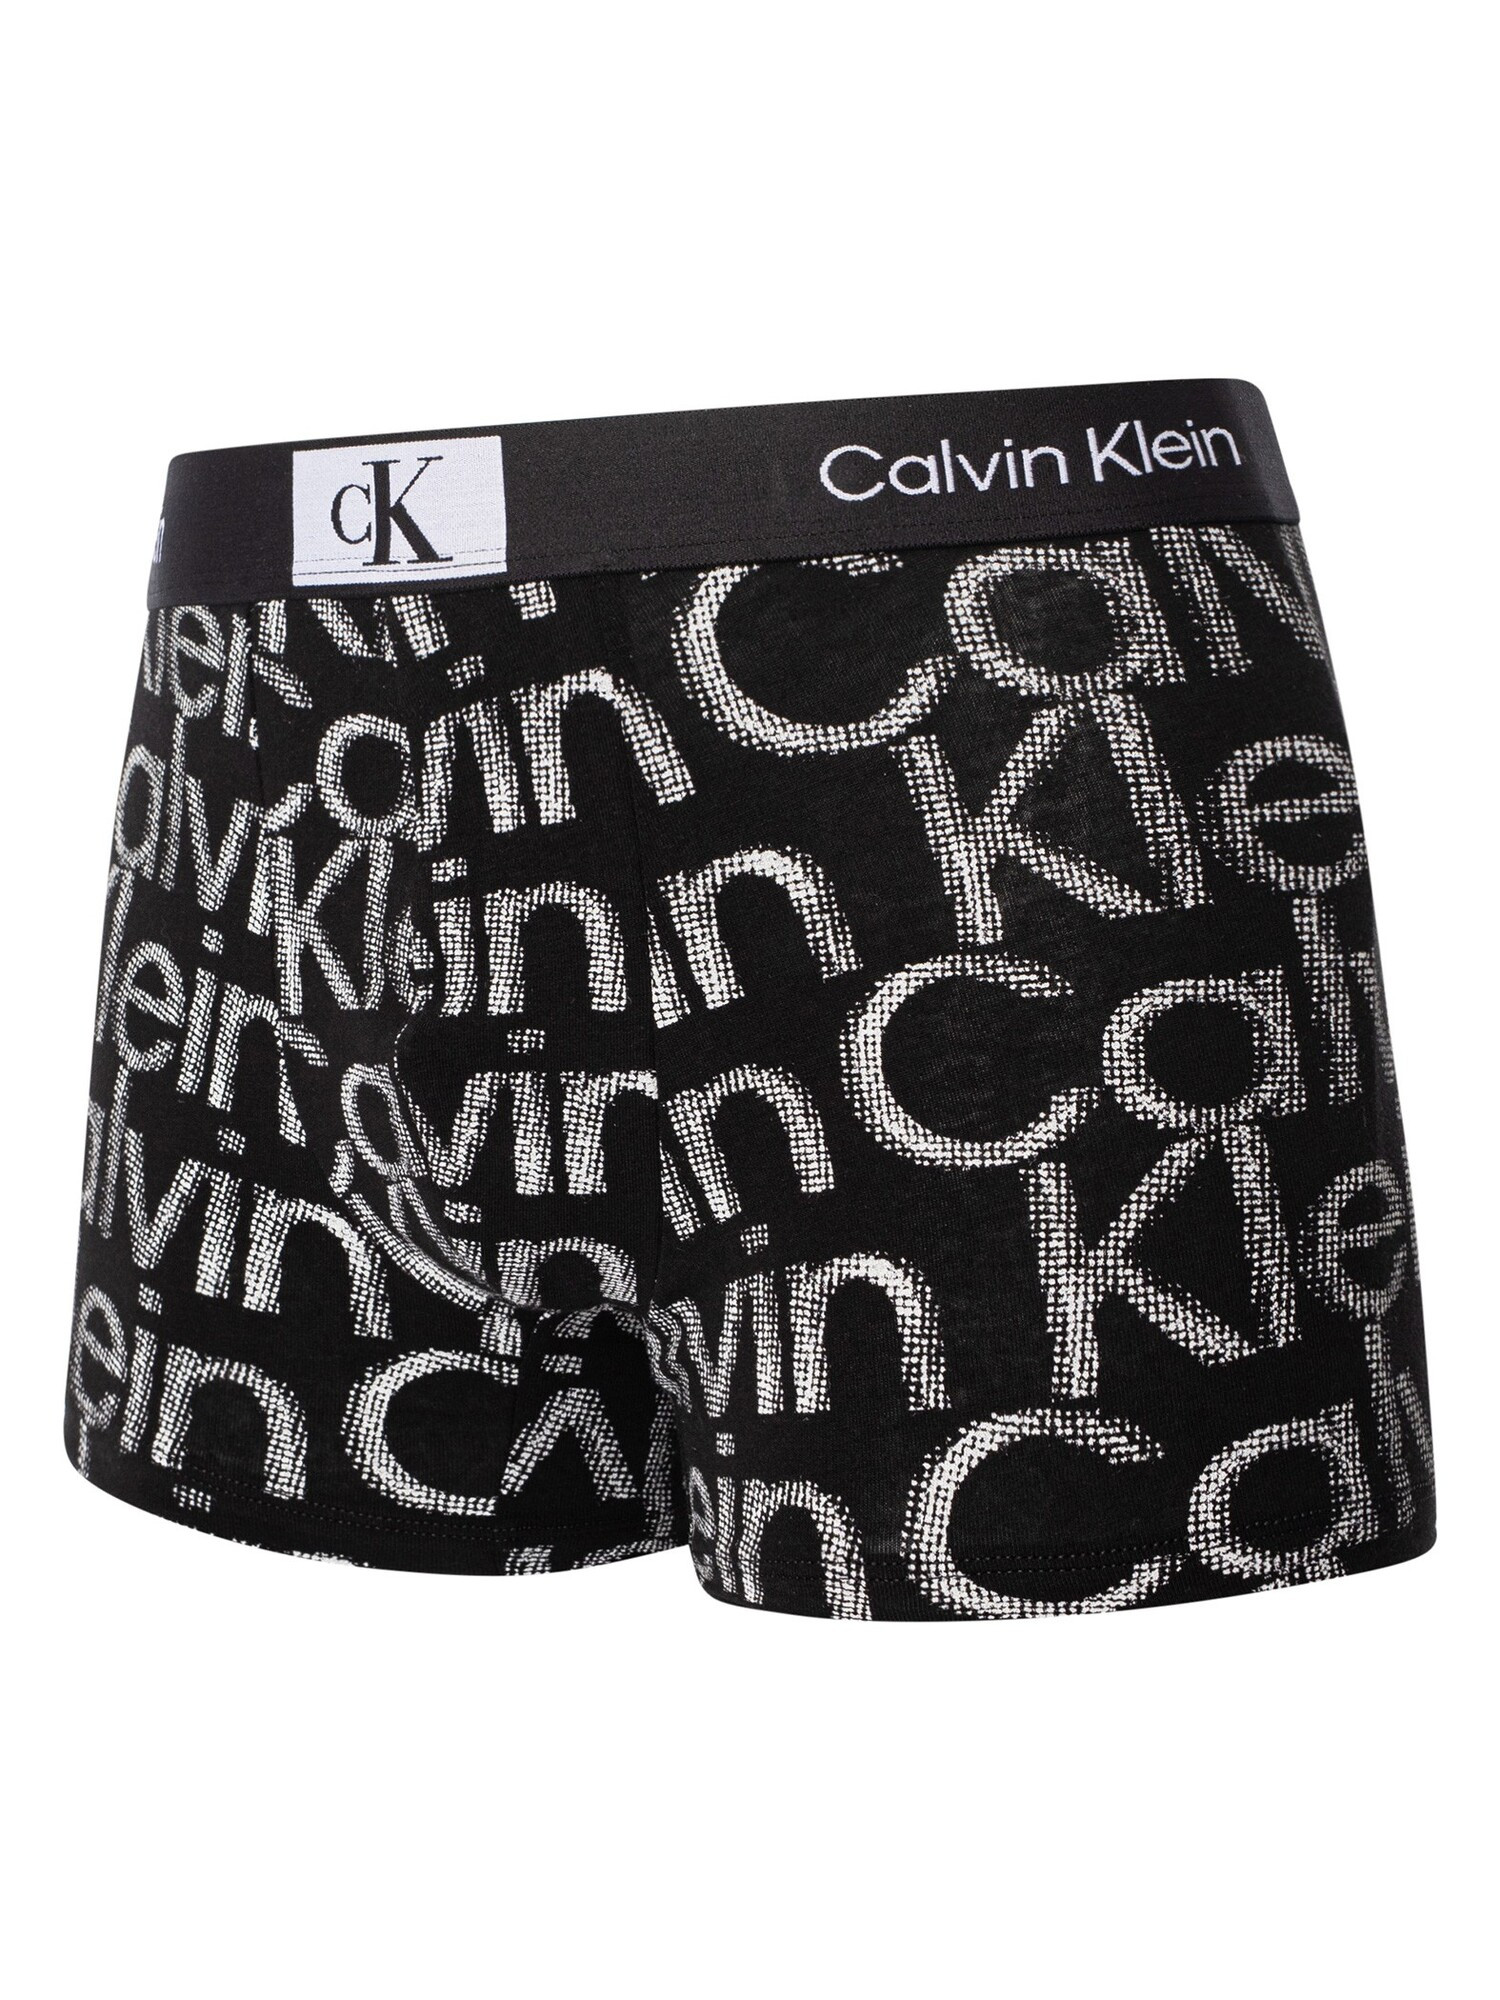 Pánské boxerky NB3403A GND černobílé - Calvin Klein M